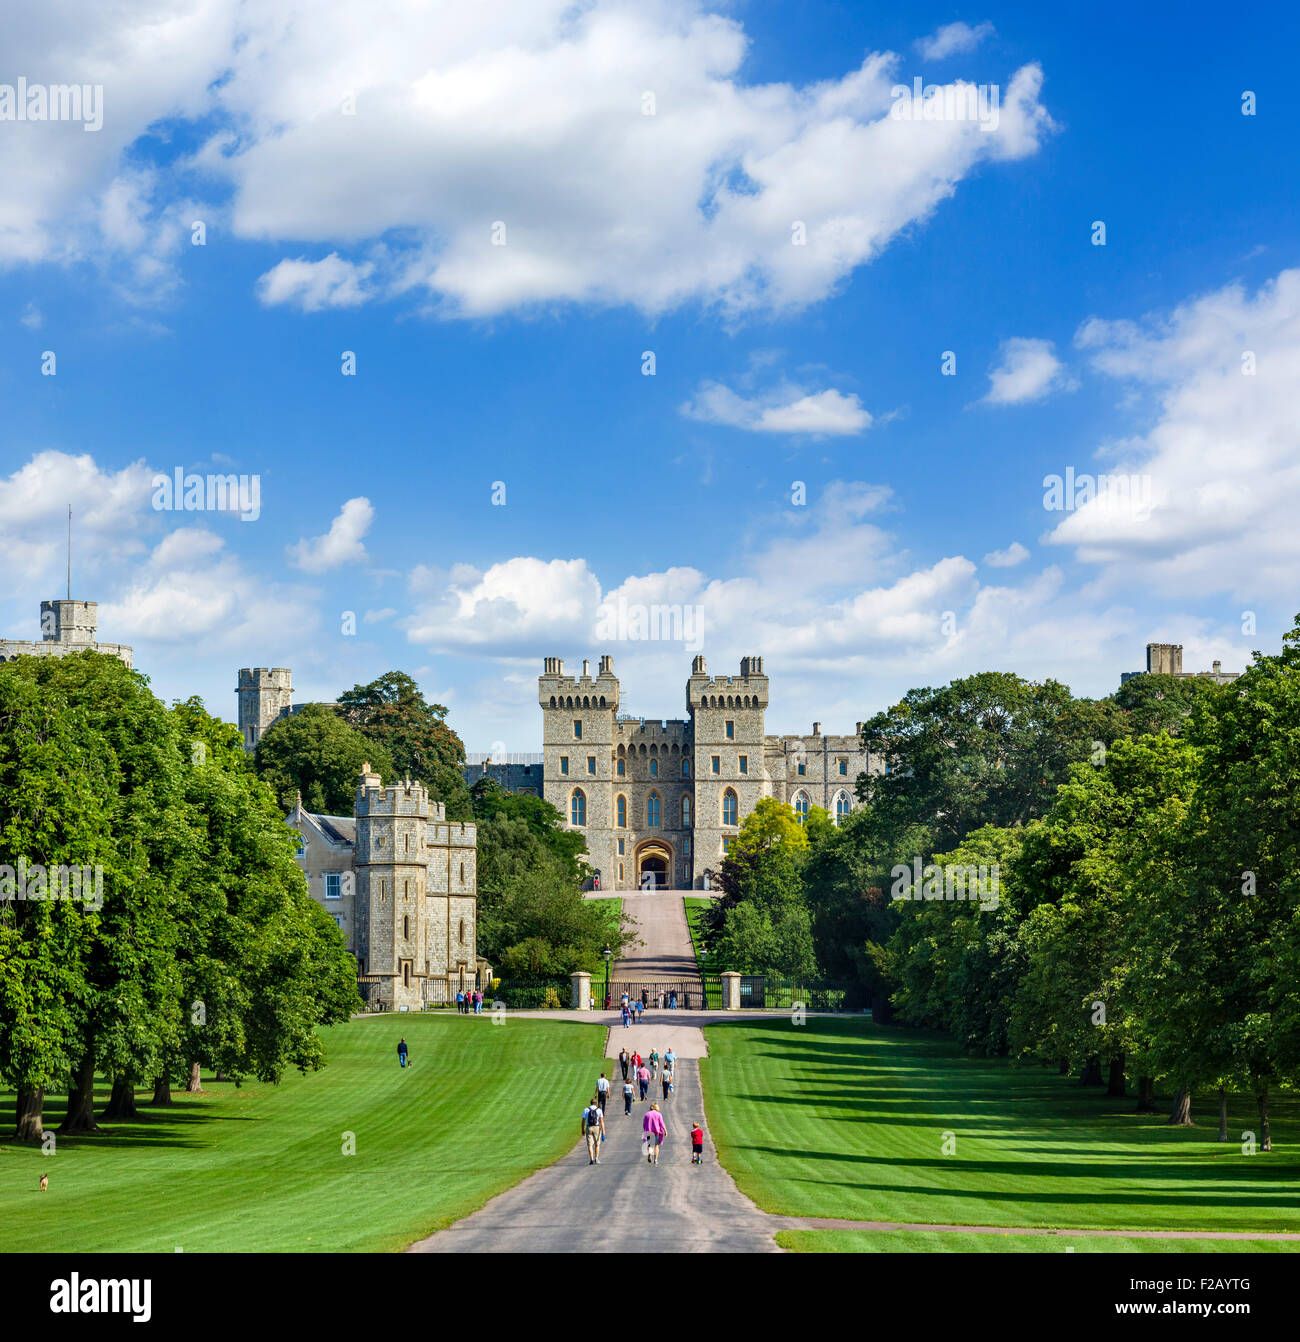 Walkers sul lungo cammino con il Castello di Windsor in distanza, Windsor Great Park, Berkshire, Inghilterra, Regno Unito Foto Stock